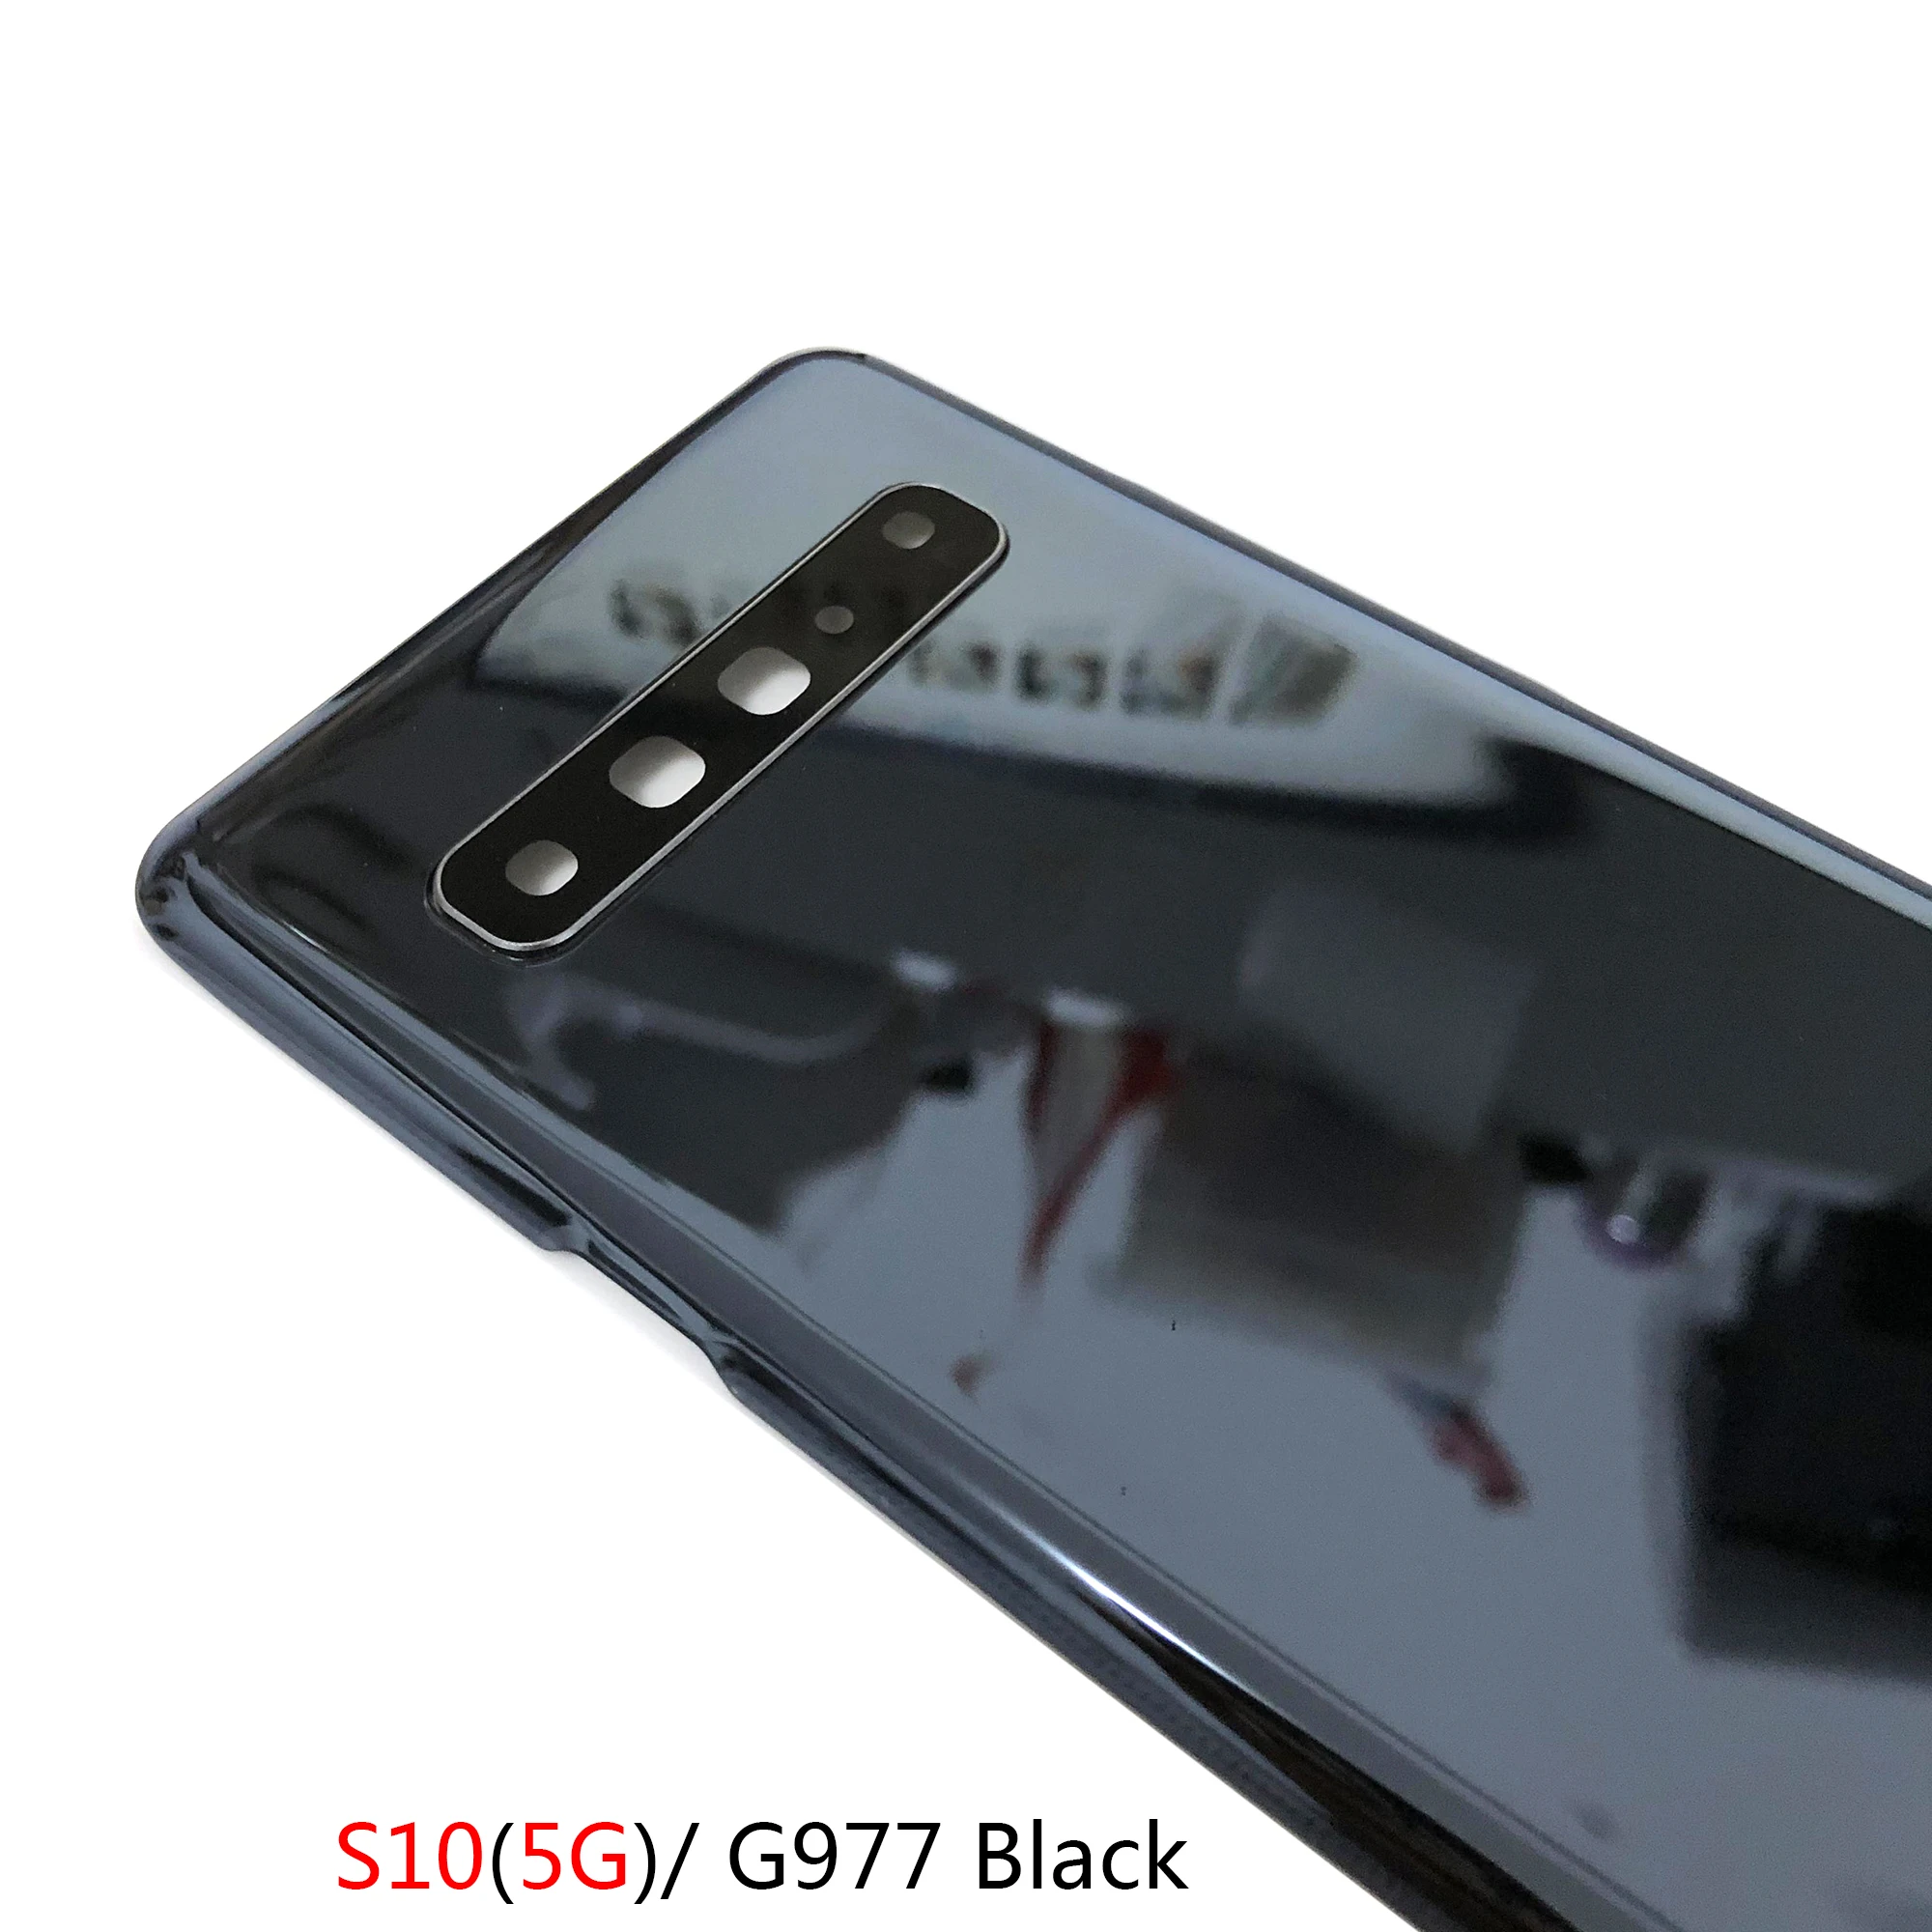 Carcasa trasera de vidrio para Samsung Galaxy S10 G9730, cubierta de batería S10 5G G977, piezas de repuesto para puerta trasera